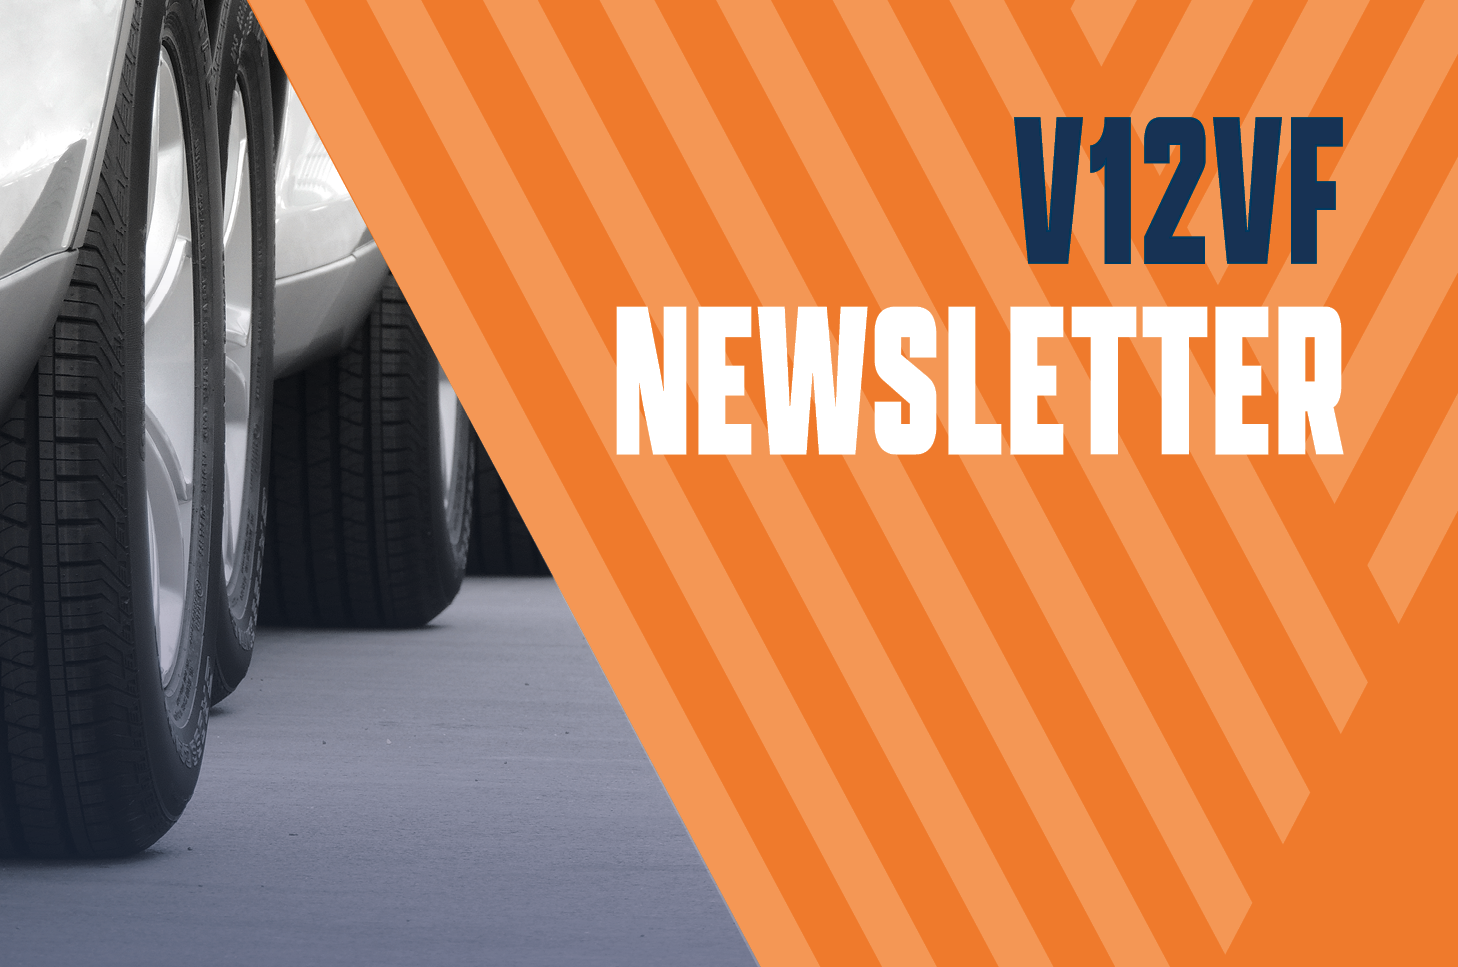 V12VF newsletter banner image